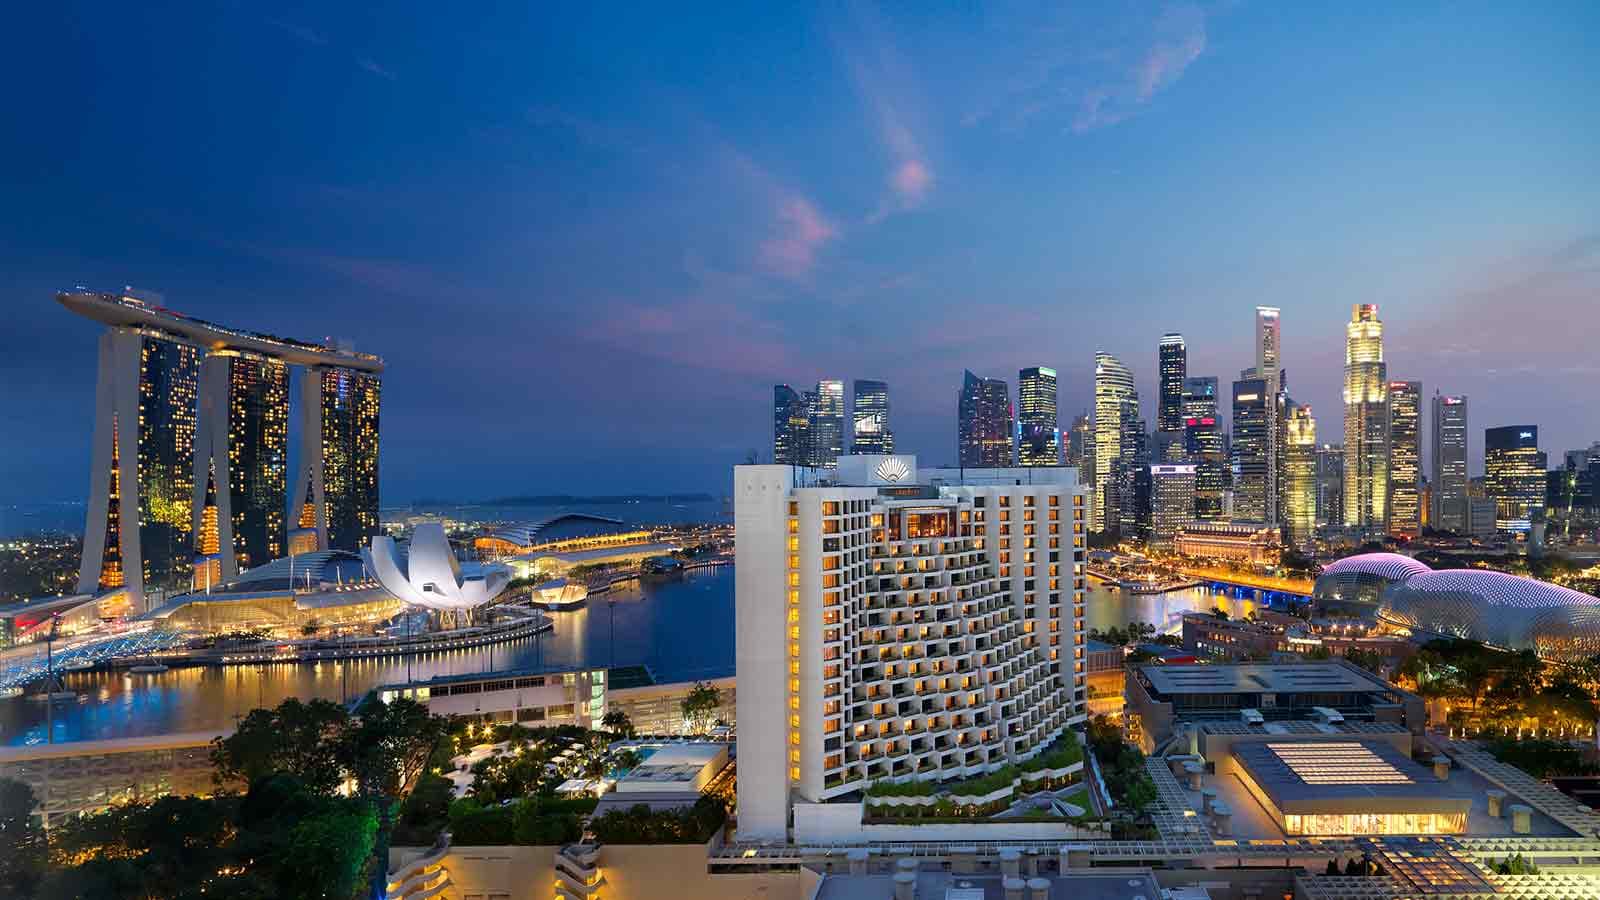 Mandarin Oriental Singapore – Điểm đến đẳng cấp sở hữu tầm nhìn đắt giá bậc nhất xứ sở Merlion